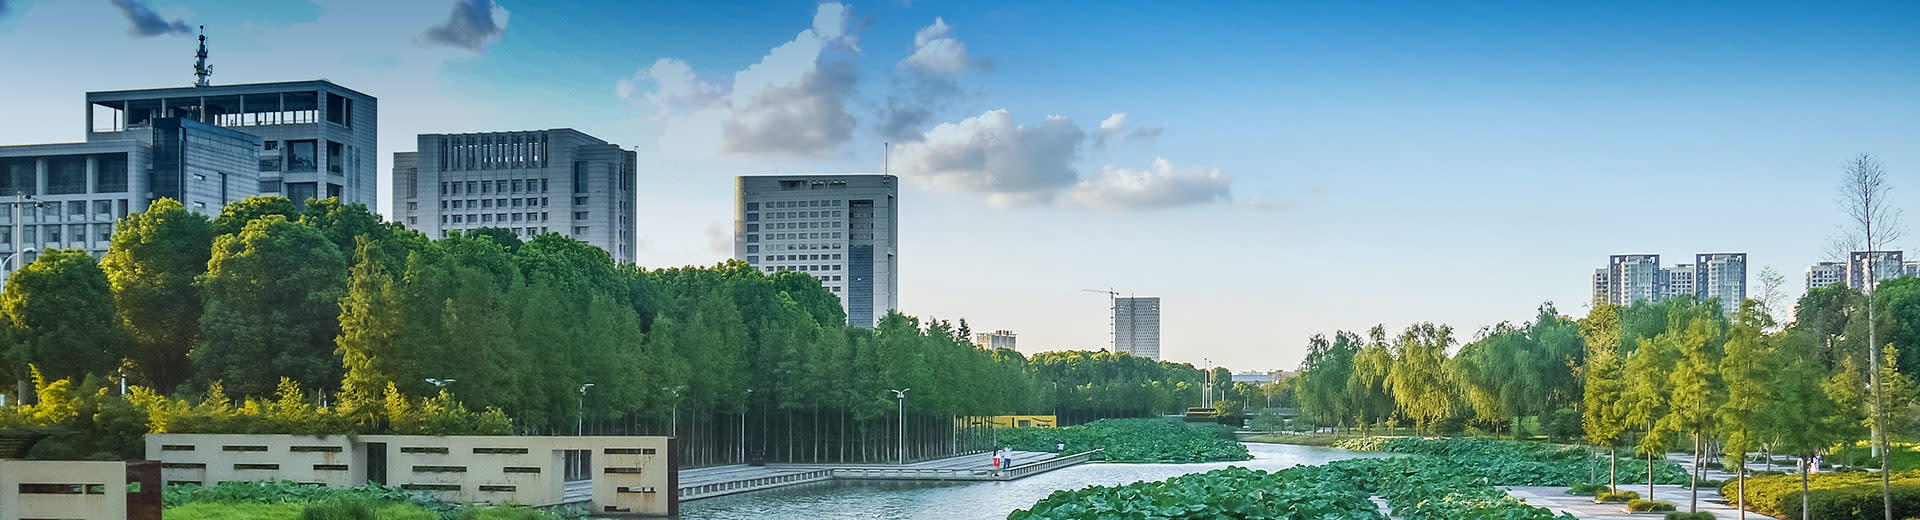 Des gratte-ciel imposants émergent de derrière des rangées d'arbres verts dans la belle ville de Ningbo.